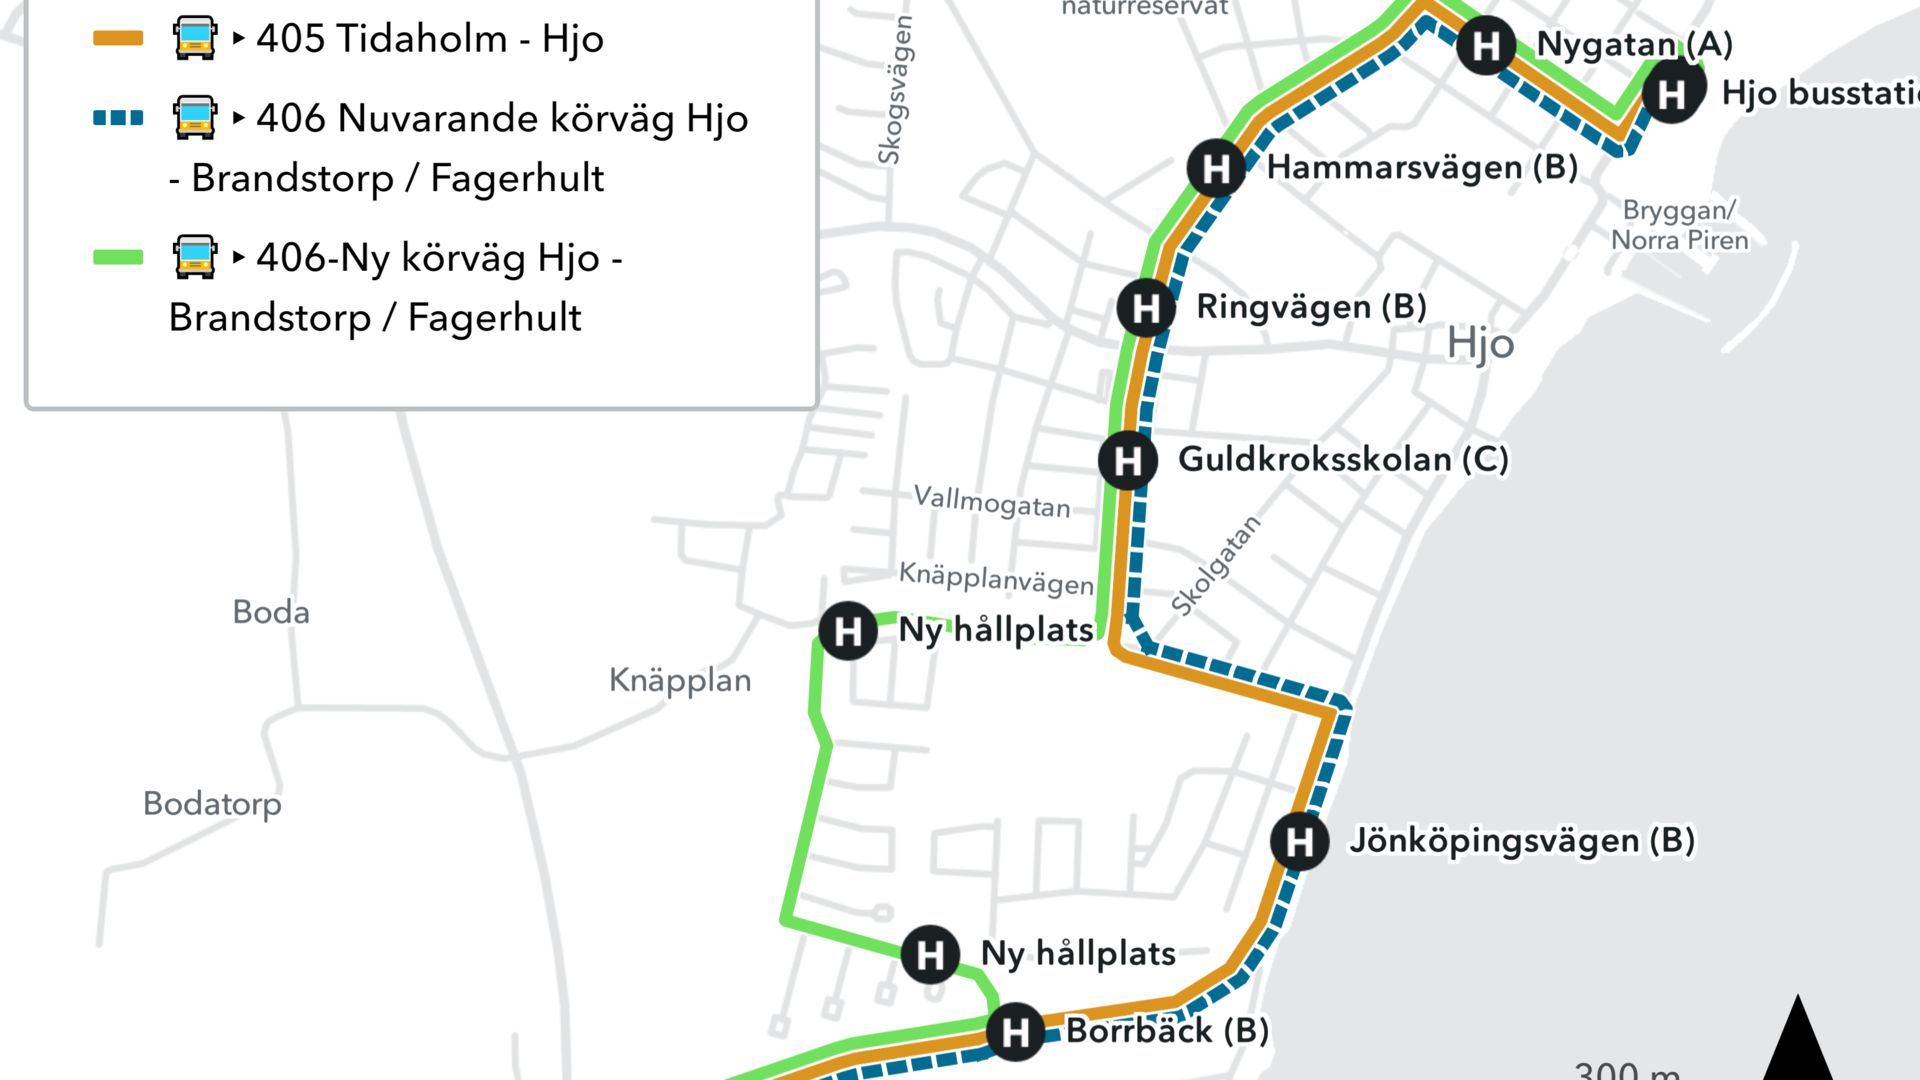 Karta över Hjo stad som visar nya rutterna för linje 405 och 406. Ändringarna framgår av texten.